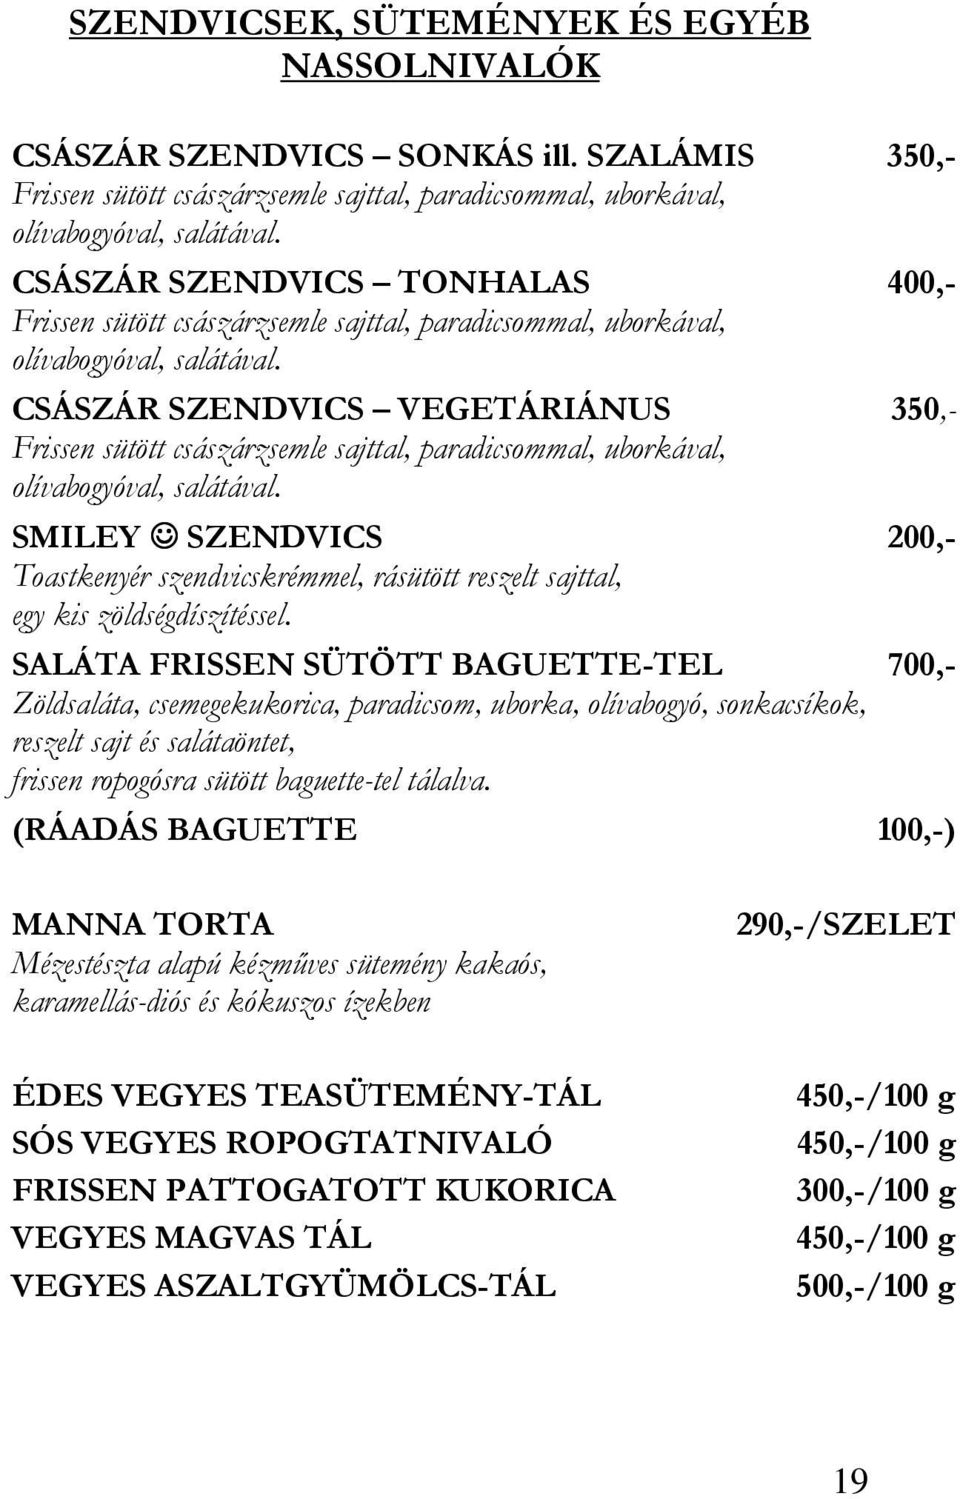 CSÁSZÁR SZENDVICS VEGETÁRIÁNUS 350,- Frissen sütött császárzsemle sajttal, paradicsommal, uborkával, olívabogyóval, salátával.